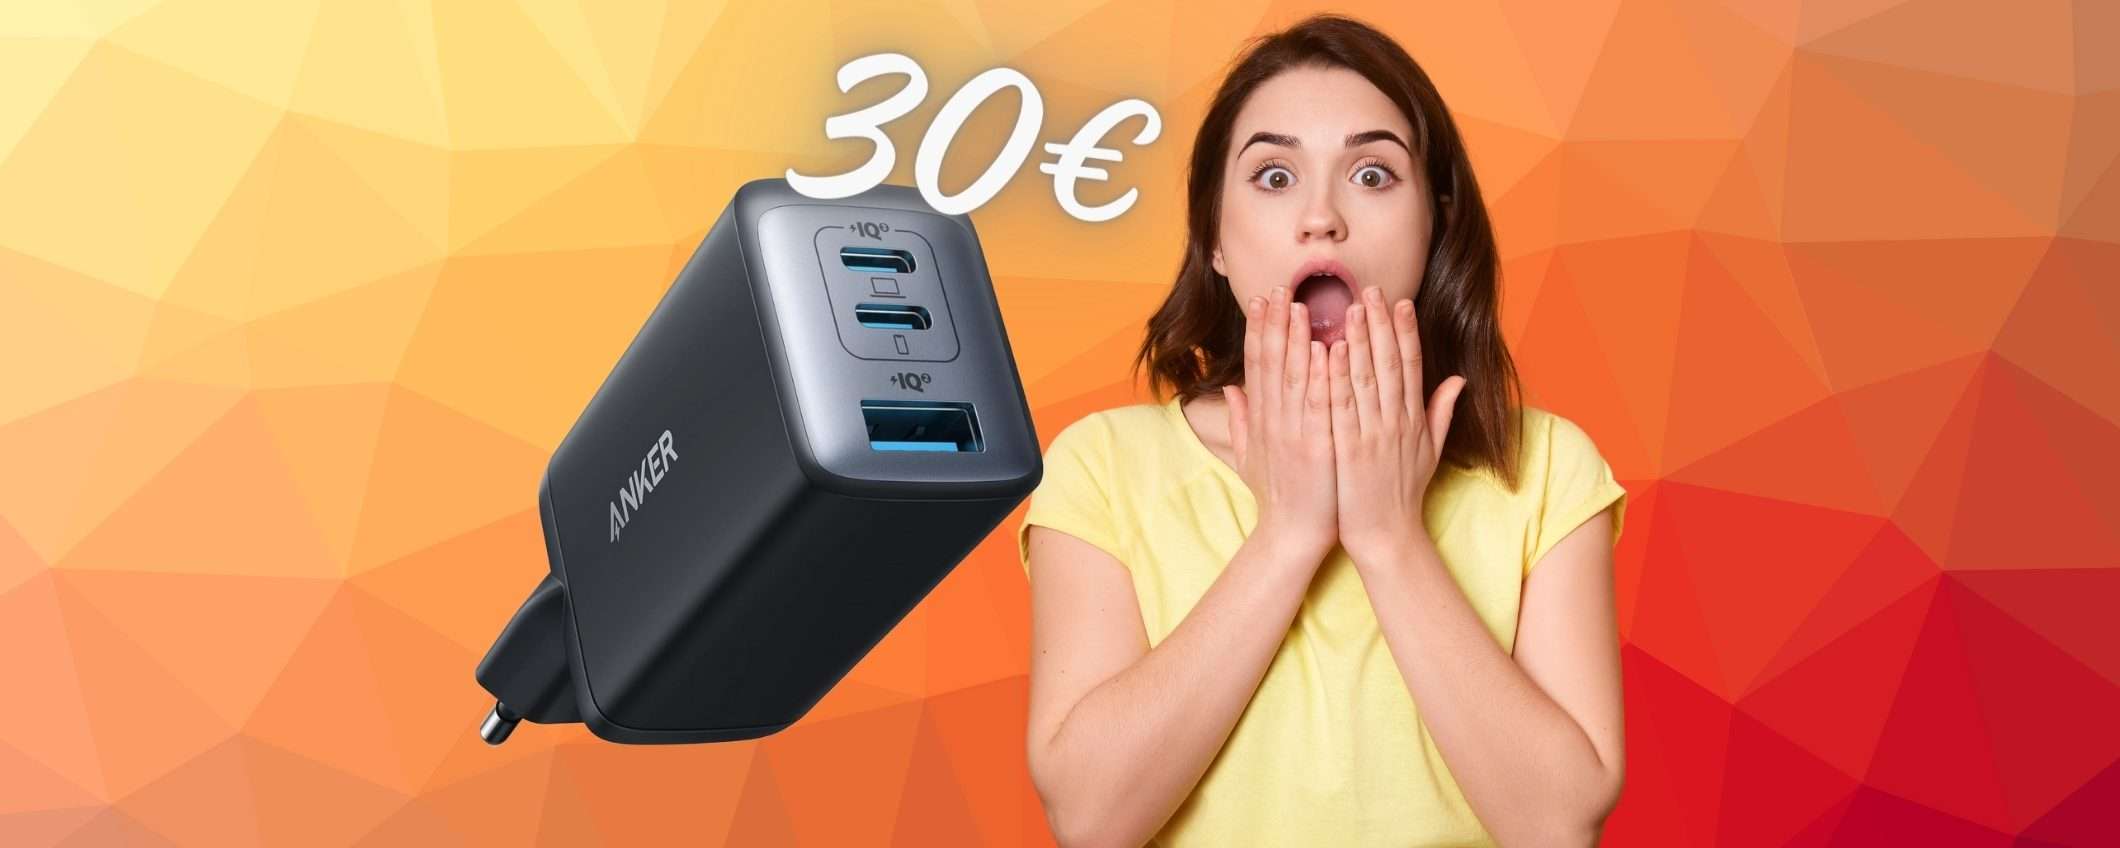 Caricatore USB ultra compatto con potenza da 65W a SOLI 30€